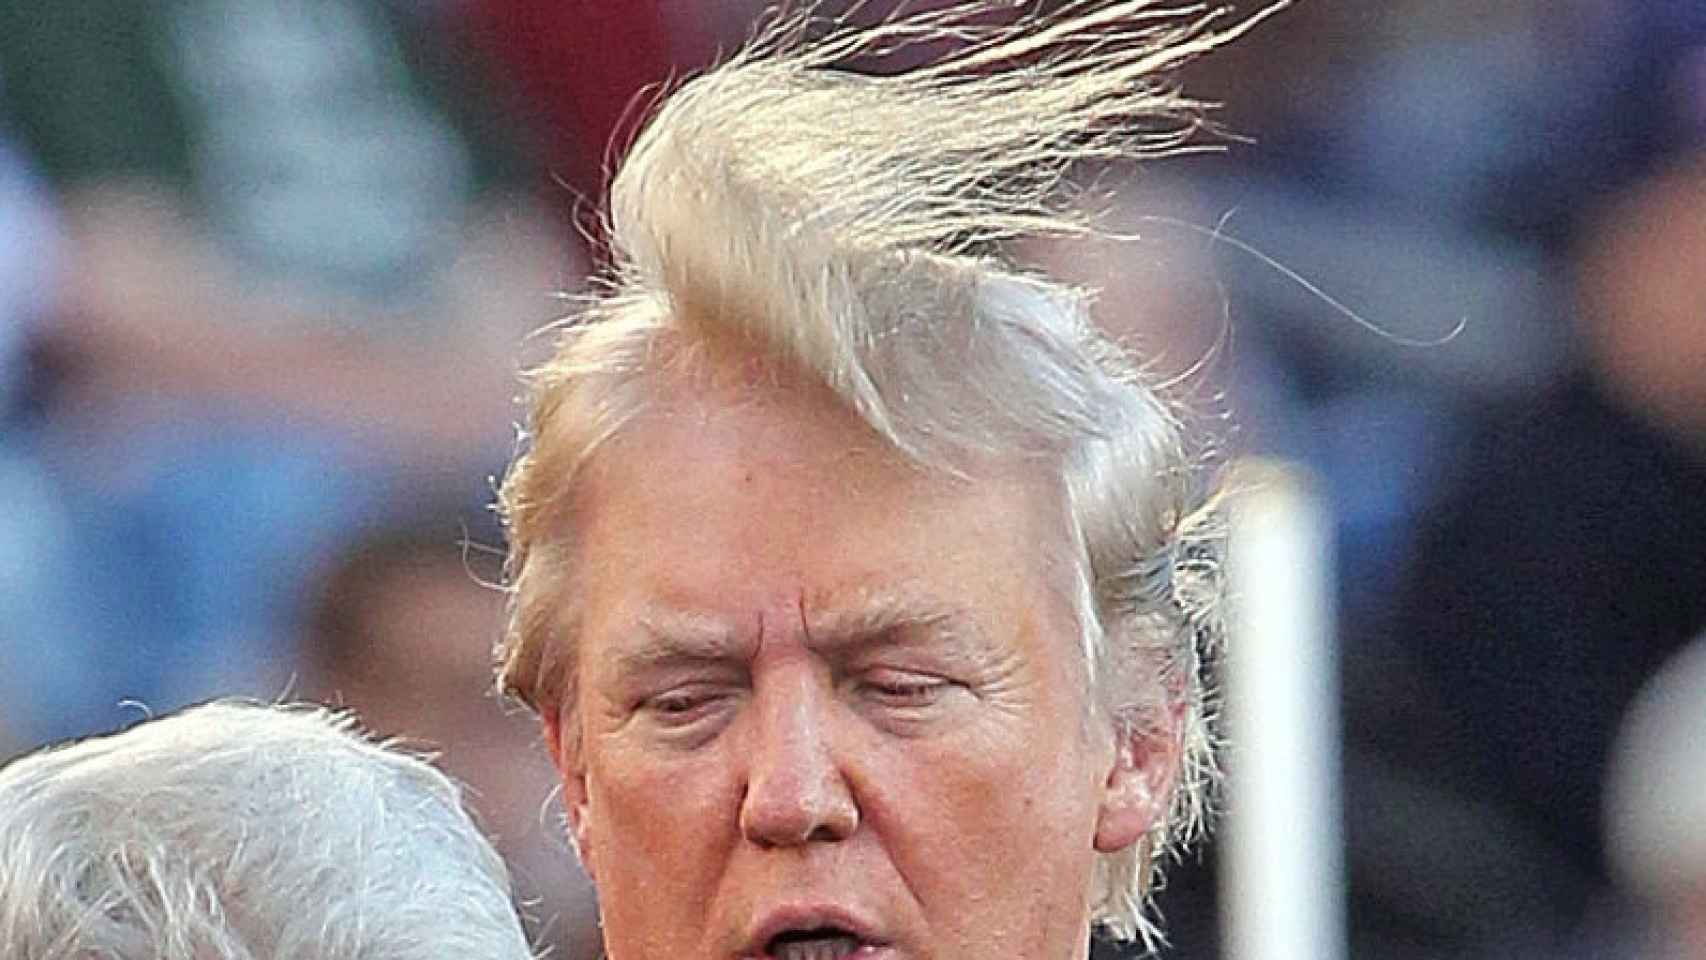 Trump lleva el pelo largo, como se aprecia en esta imagen en la que el viento se lo remueve